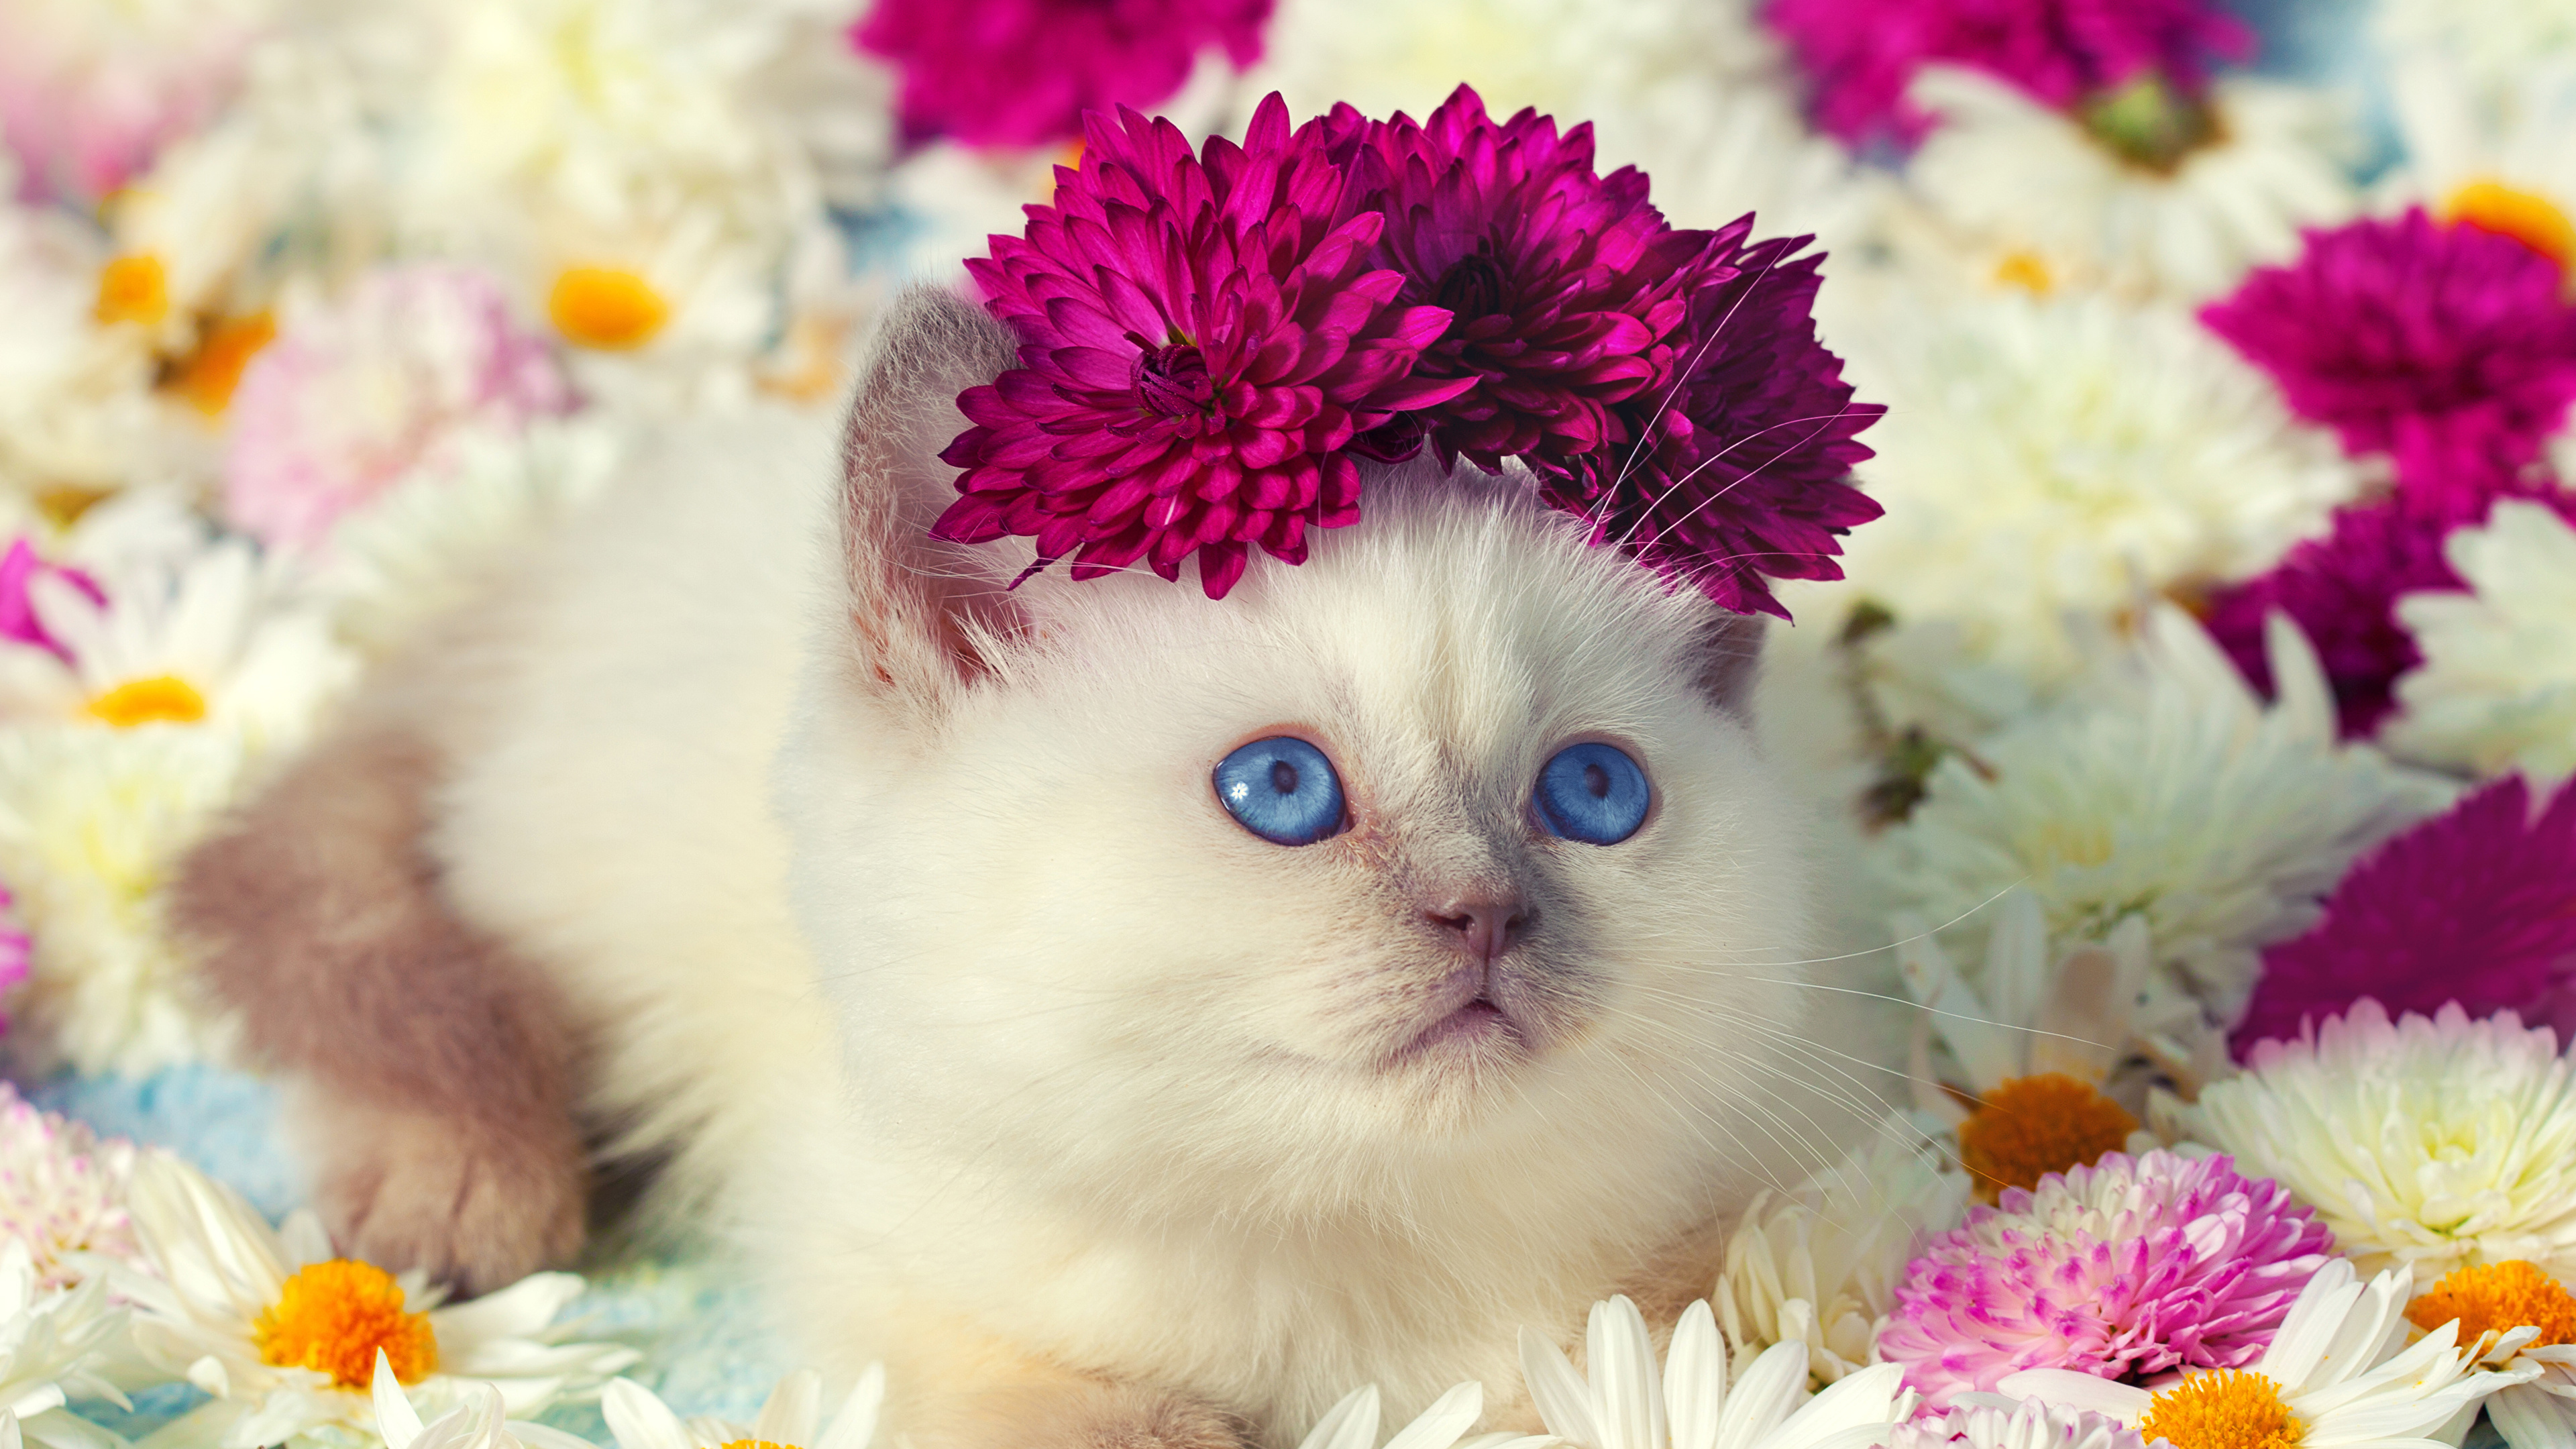 壁紙 3840x2160 飼い猫 カモミール 菊 凝視 子猫 可愛い 動物 ダウンロード 写真